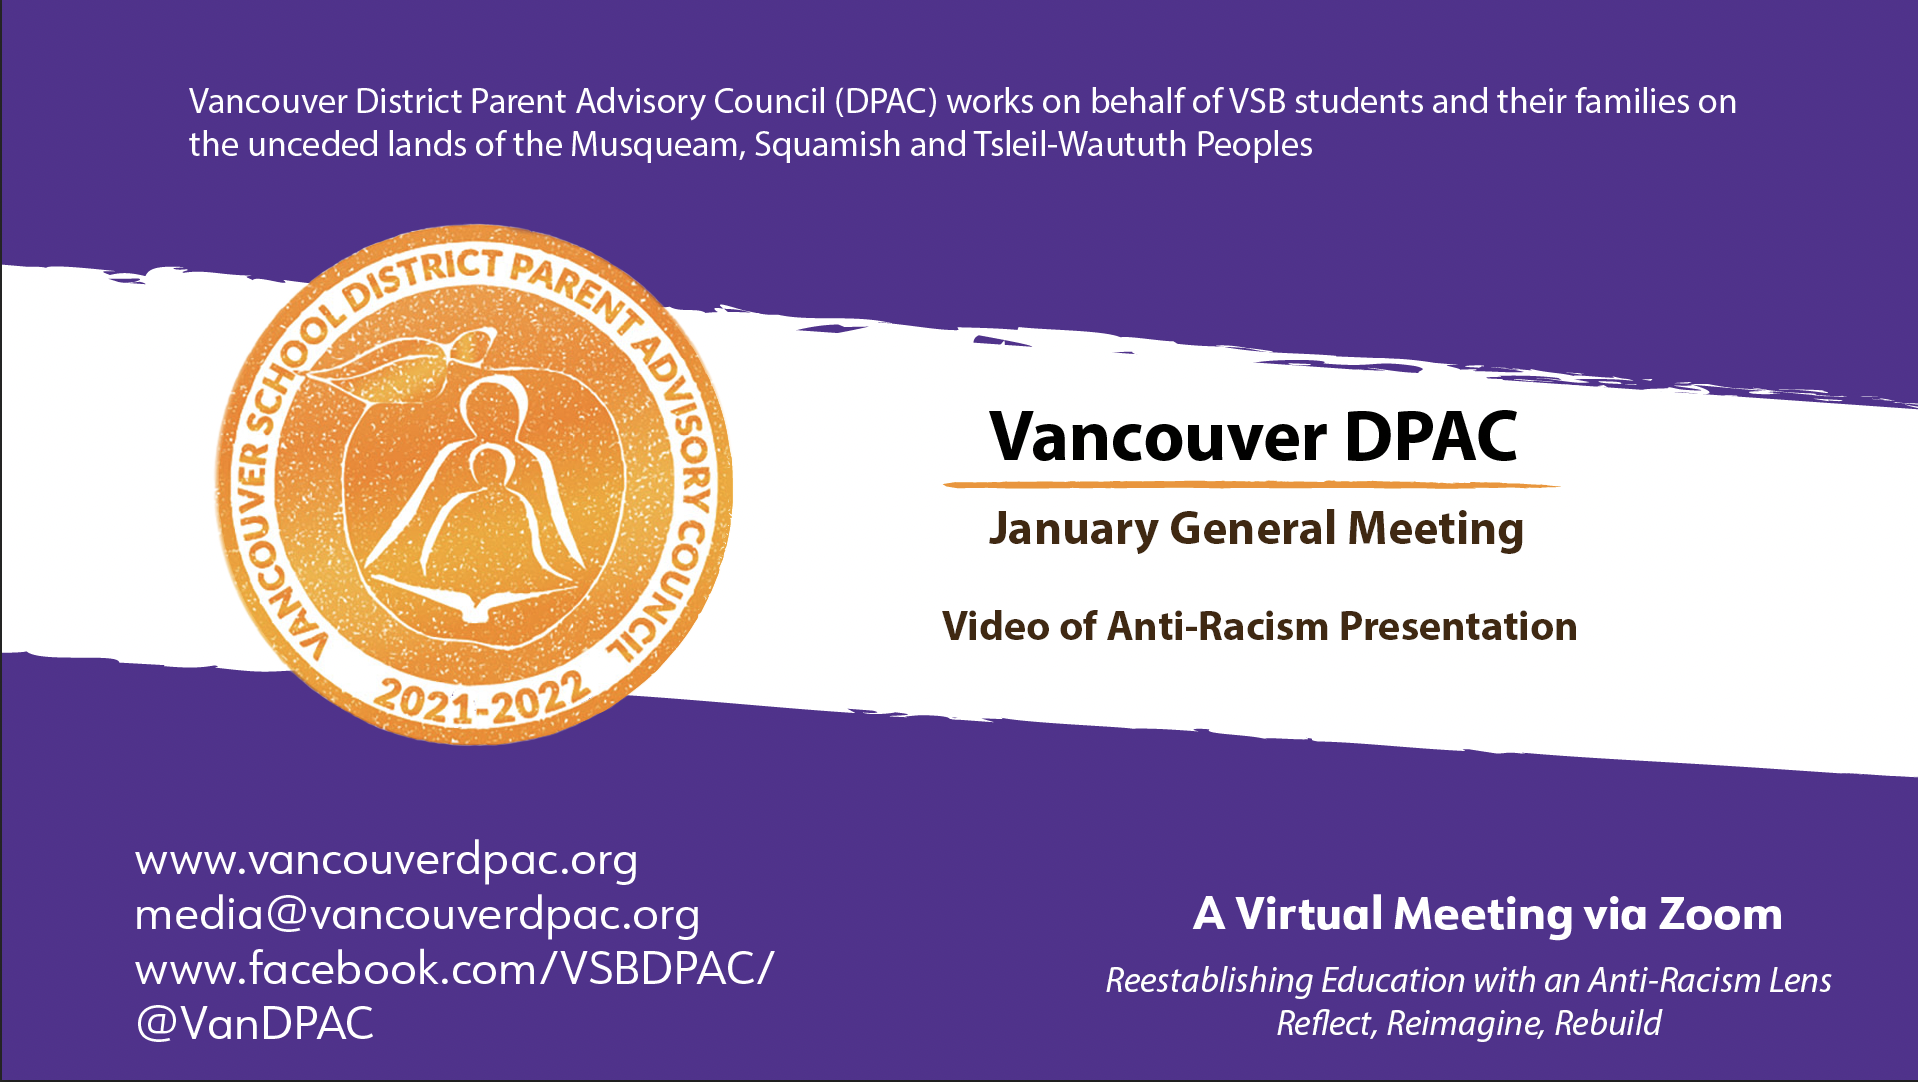 AntiRacism Work at DPAC and VSB PACs